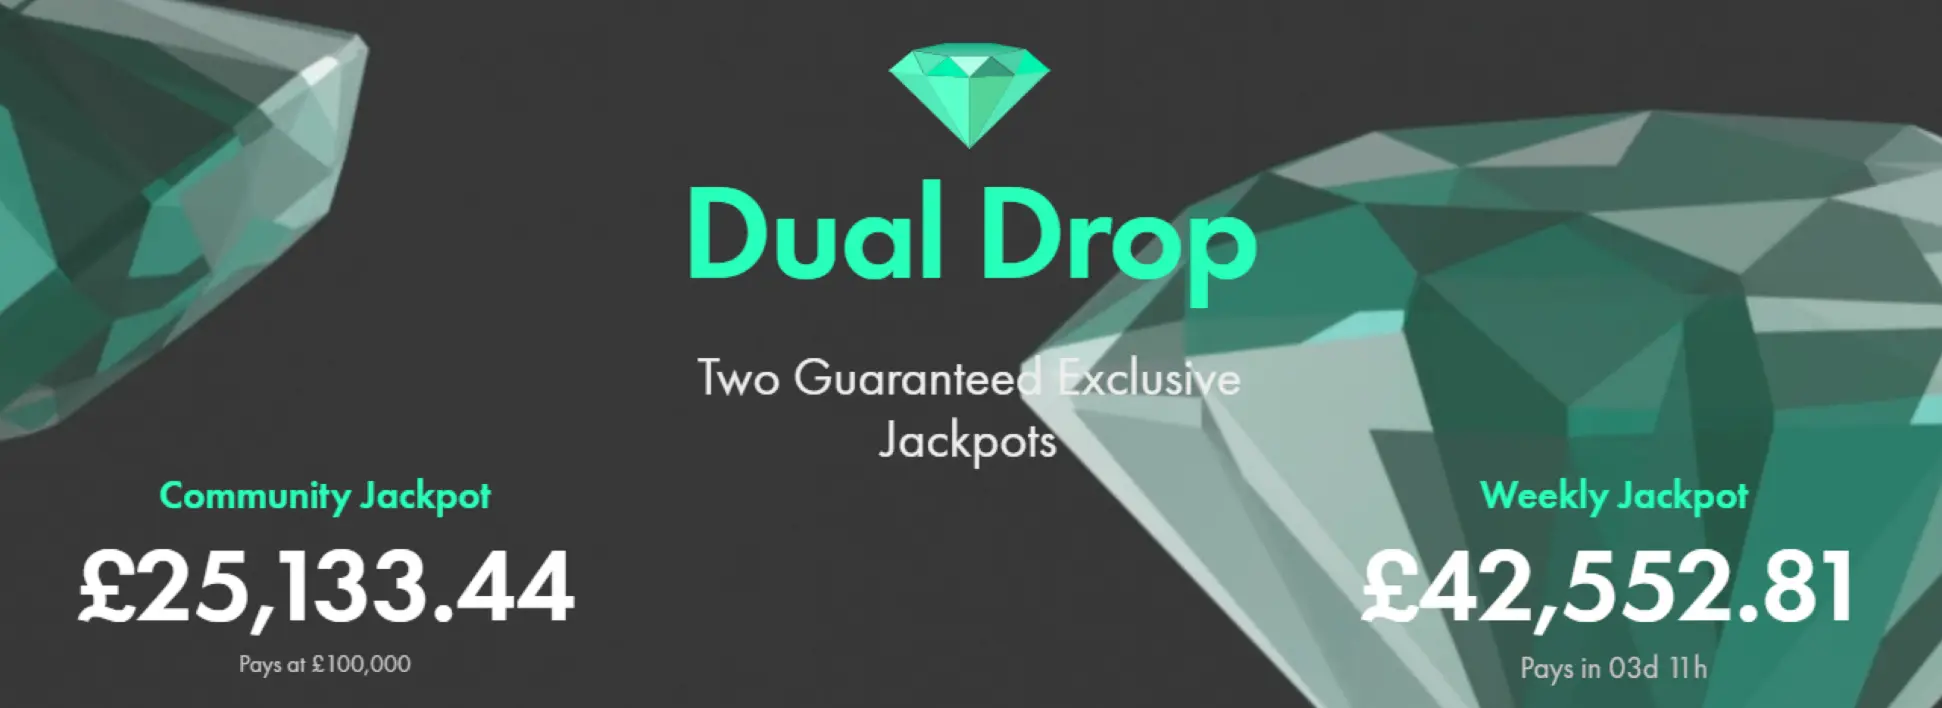 Dual Drop Bet365 Jackpot